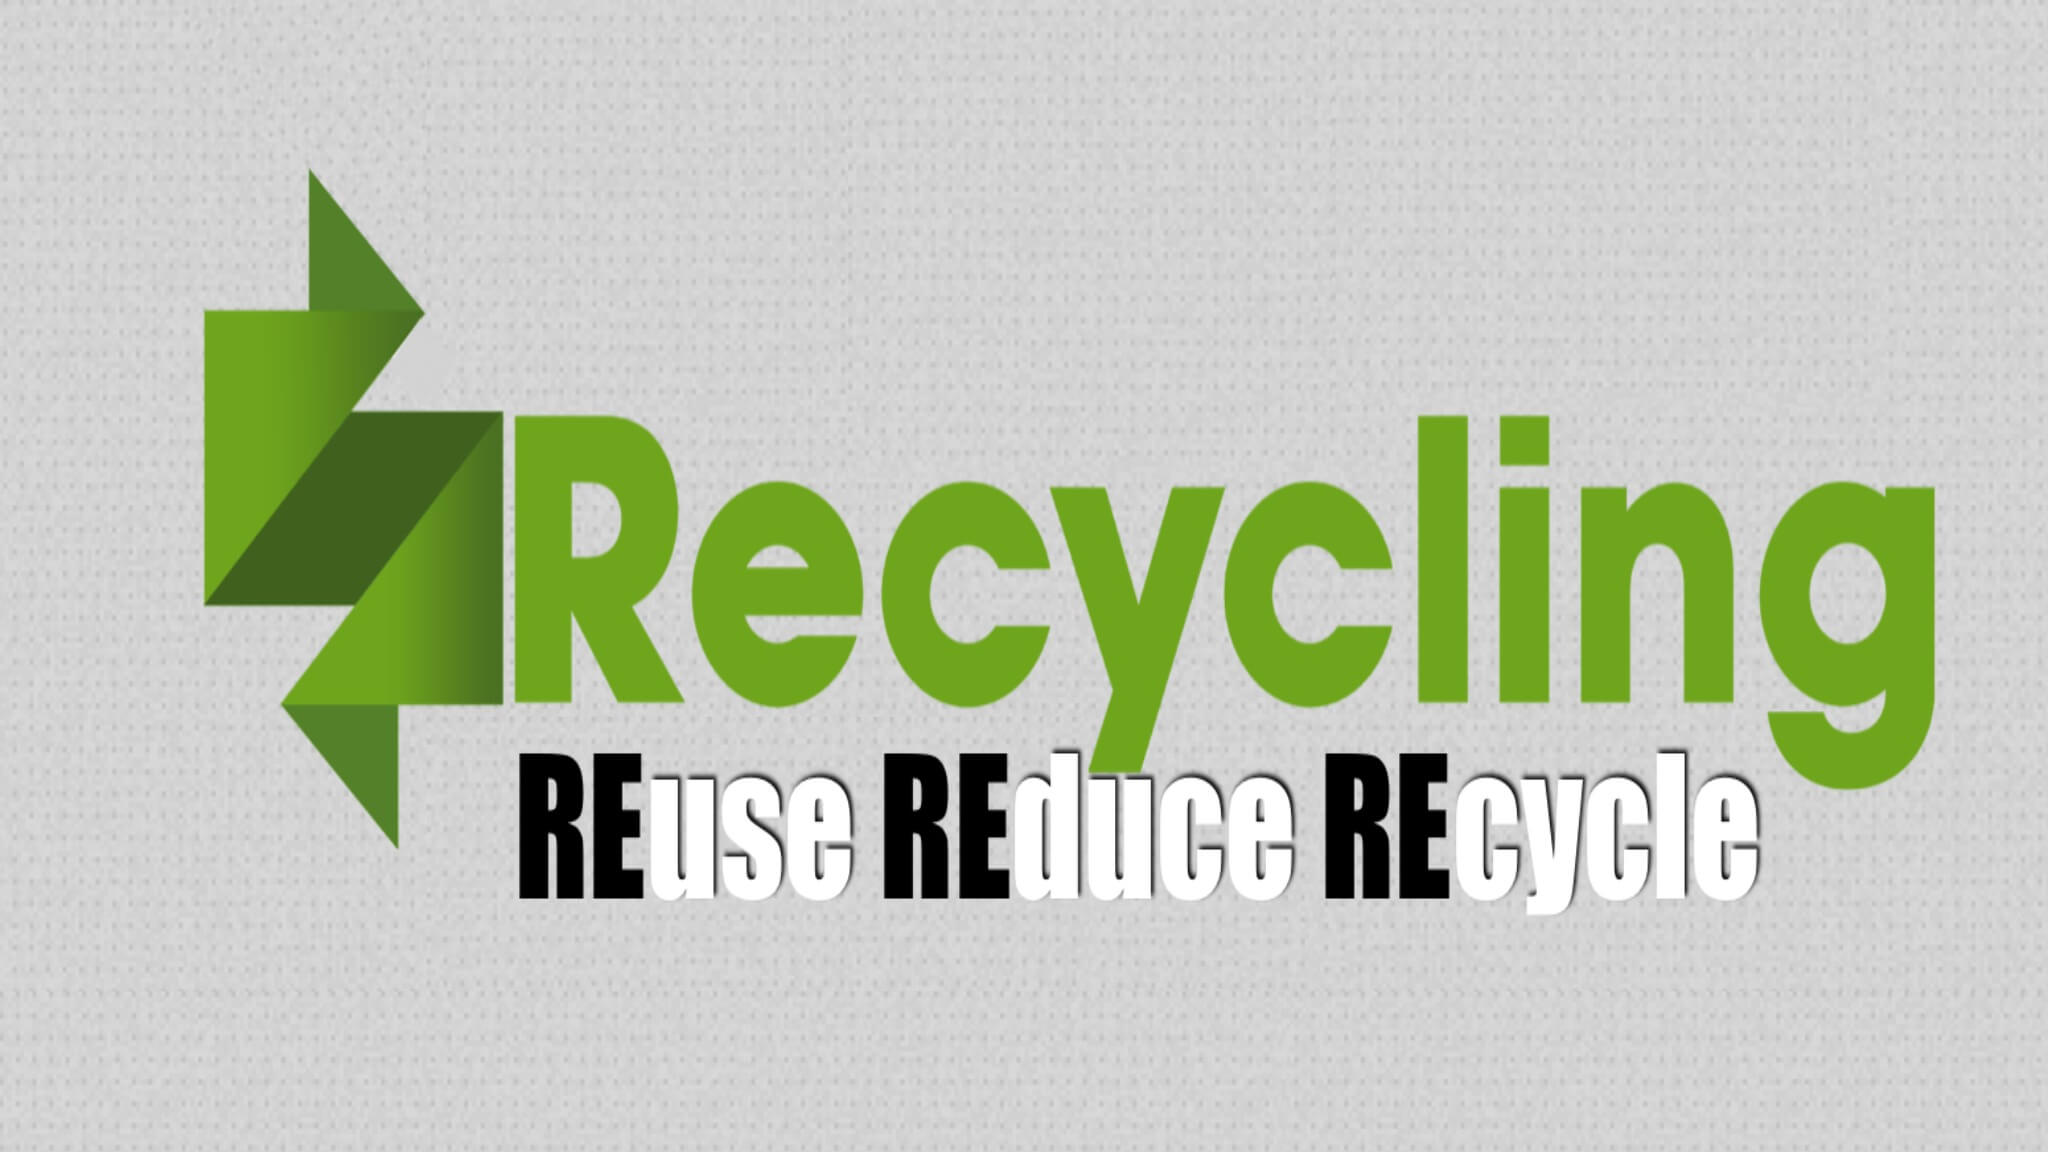 hinckley-Recycling-waste